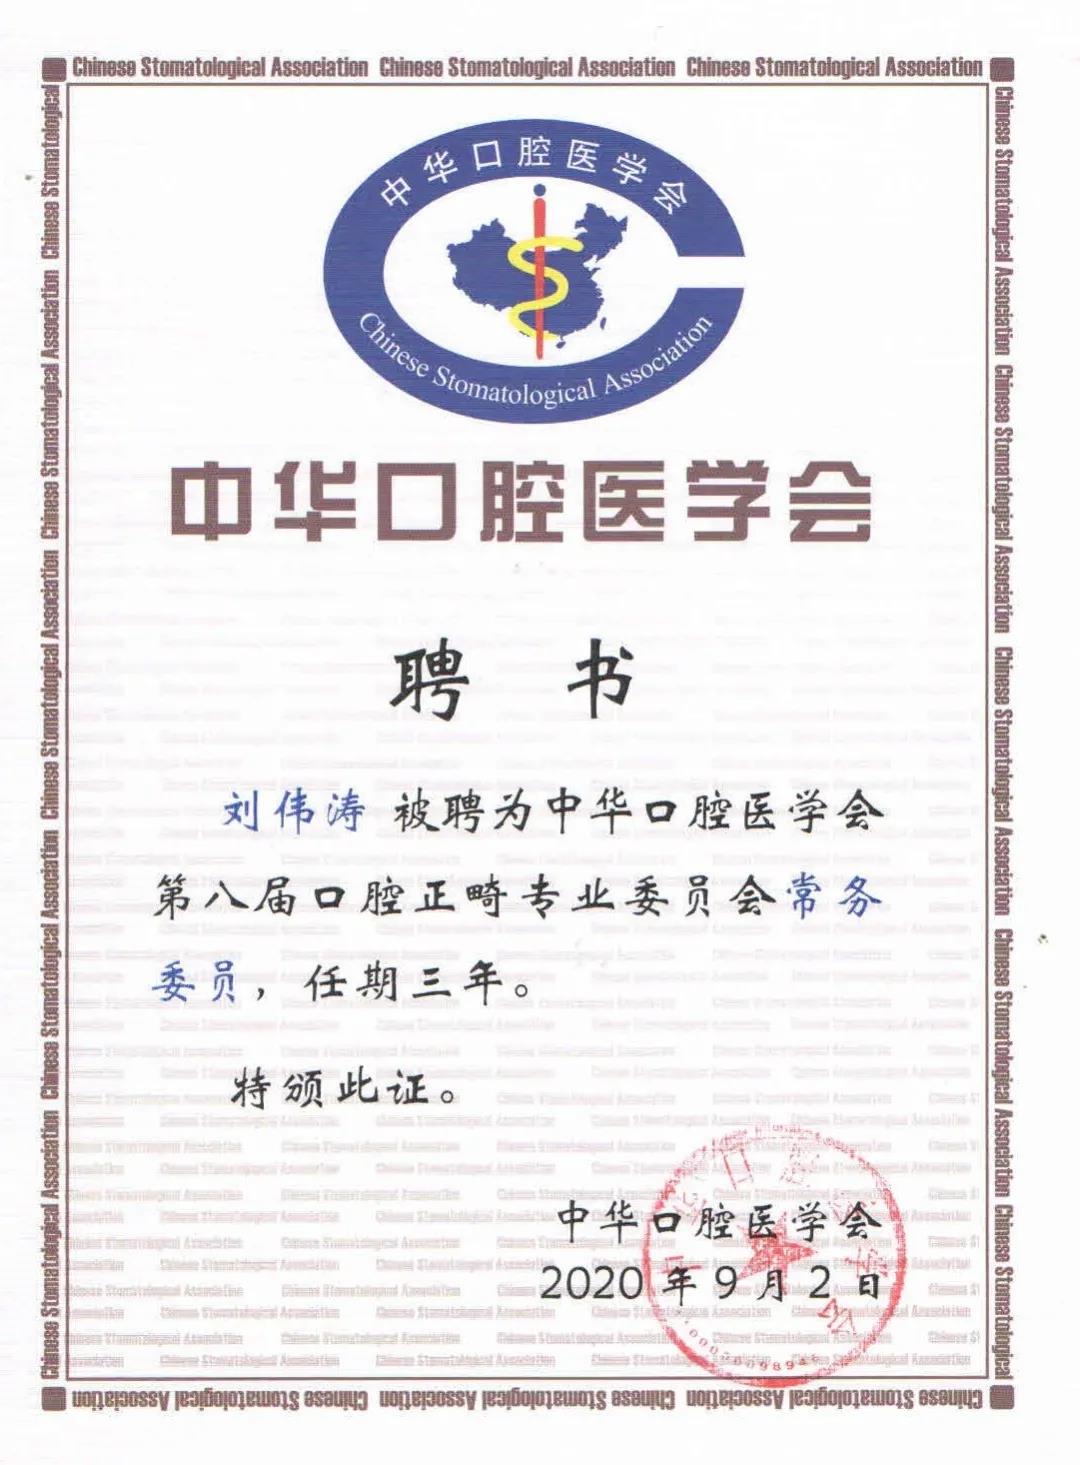 刘伟涛博士被推举为口腔正畸专业委员会常务委员，也是对赛德阳光口腔的肯定和赞誉。